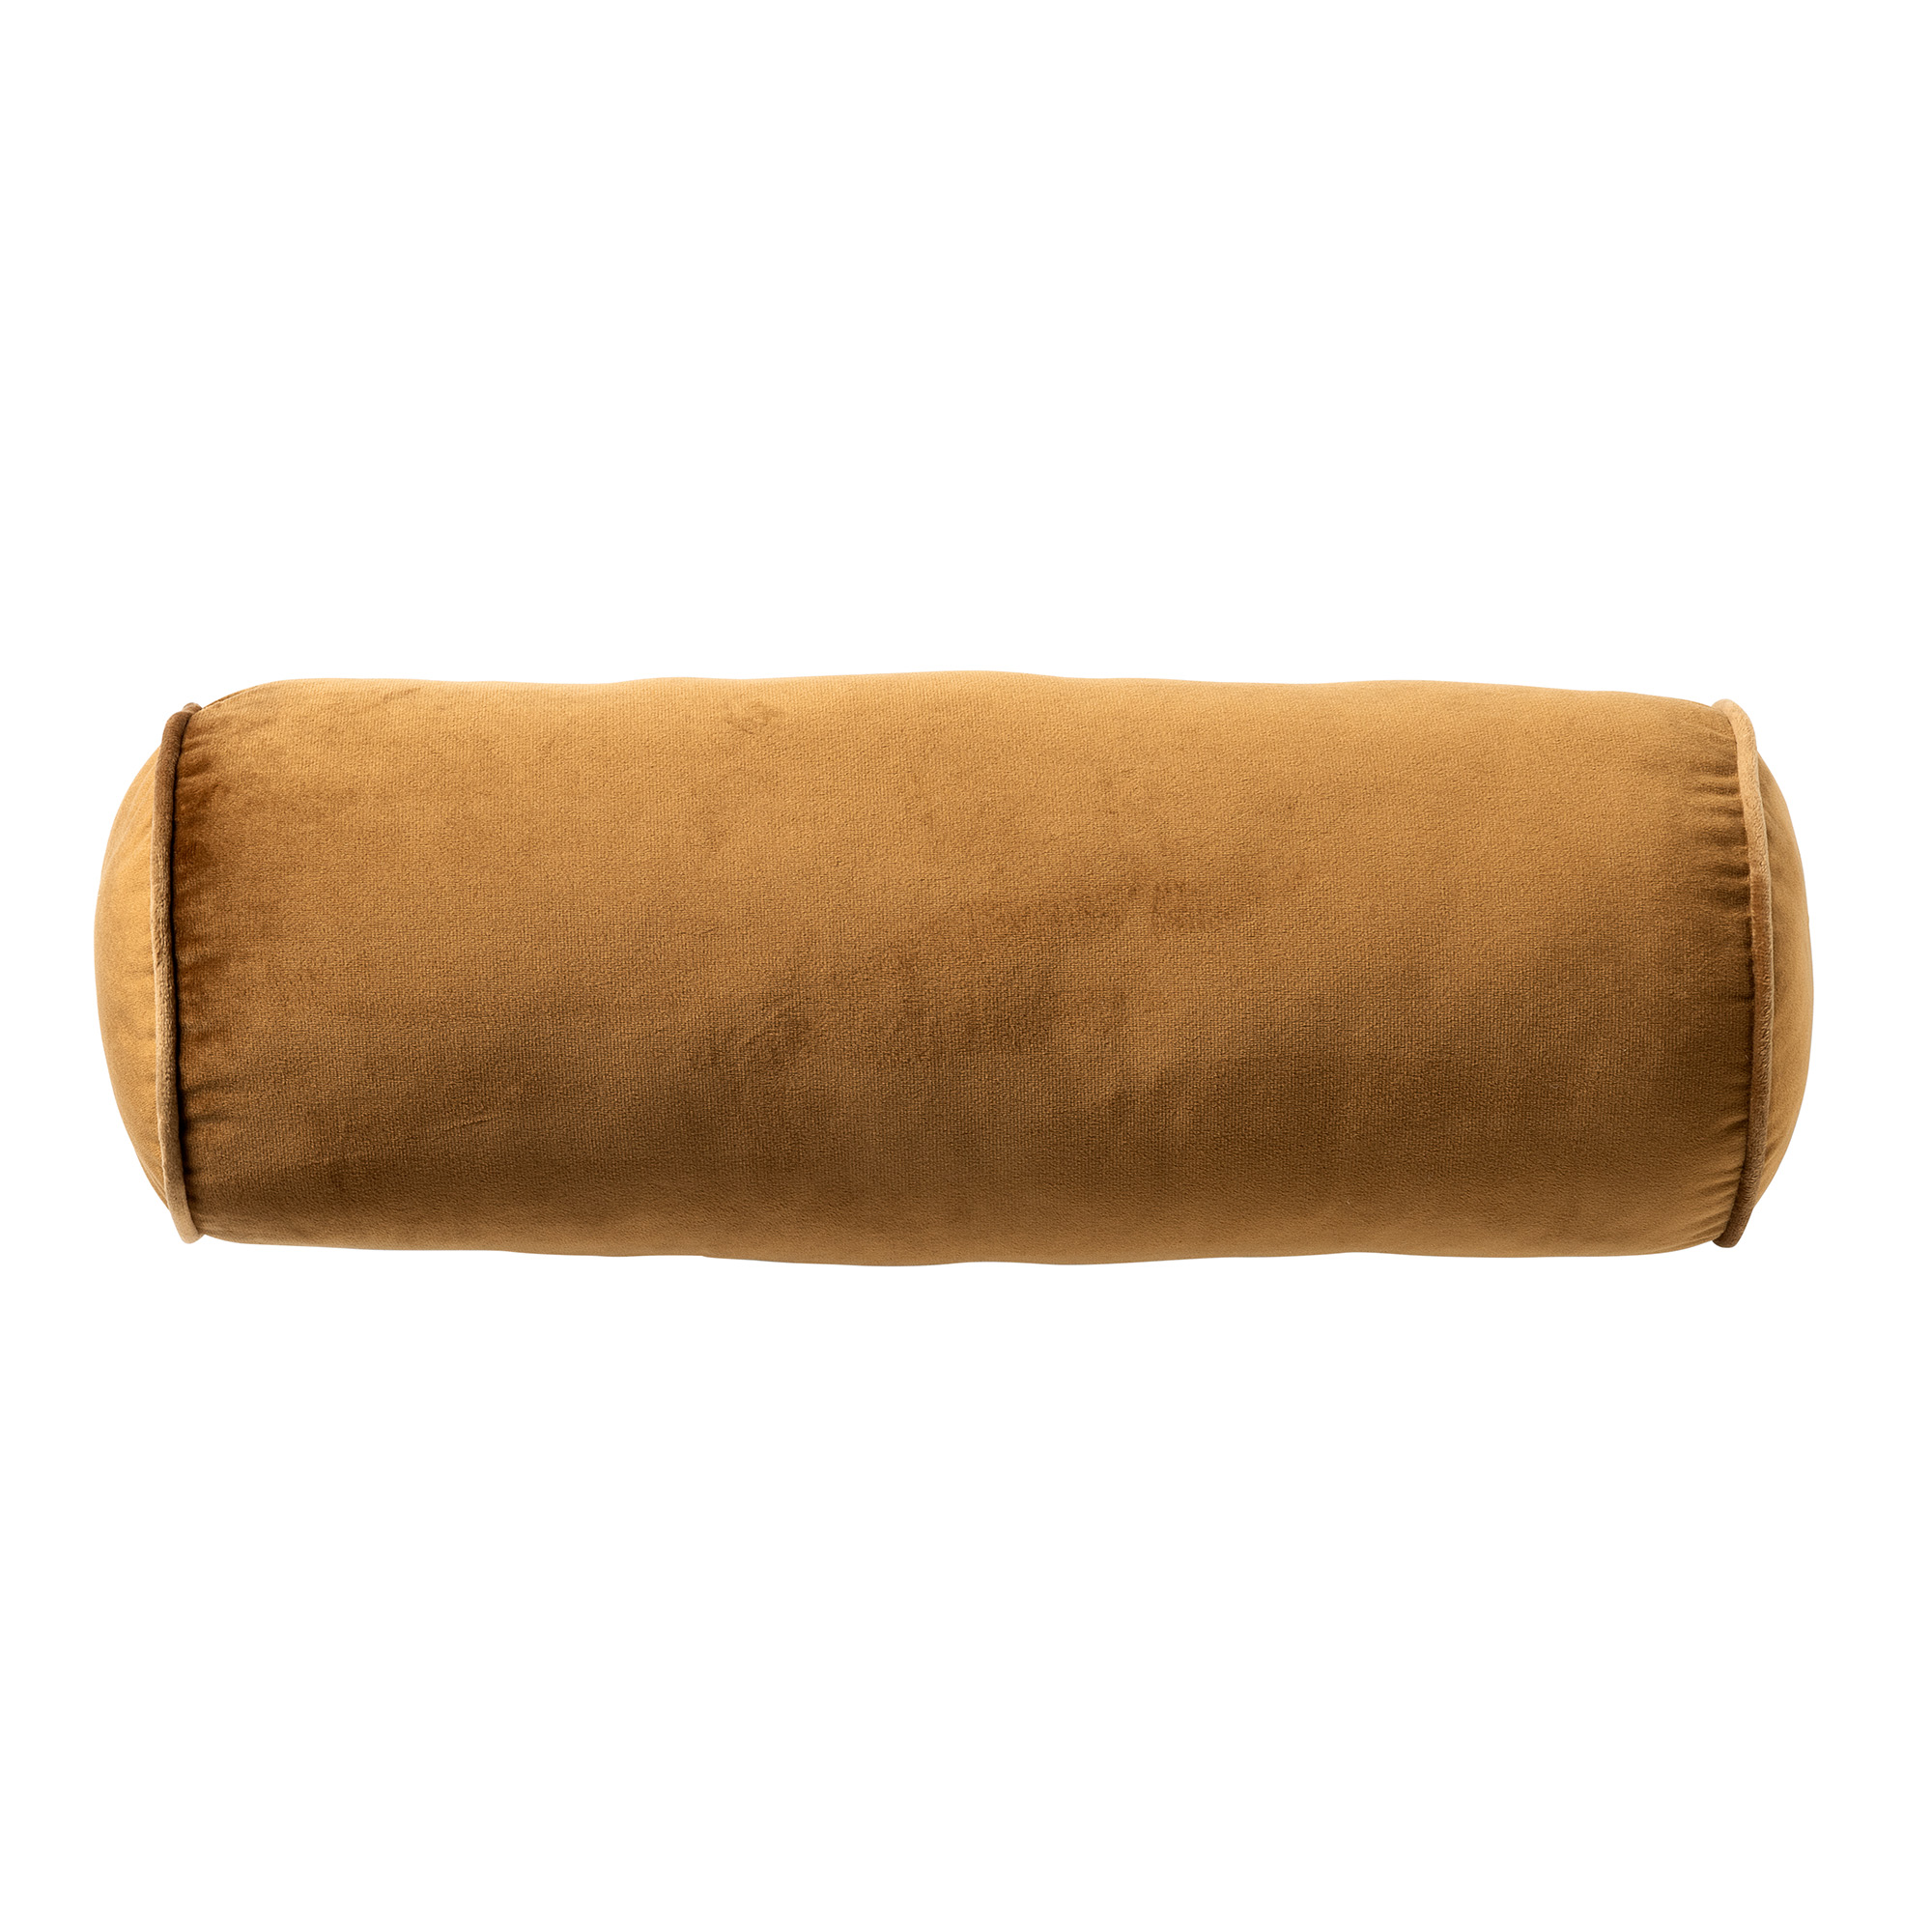 FALCO - Rollcushion 18x50 cm - Tobacco Brown - brown